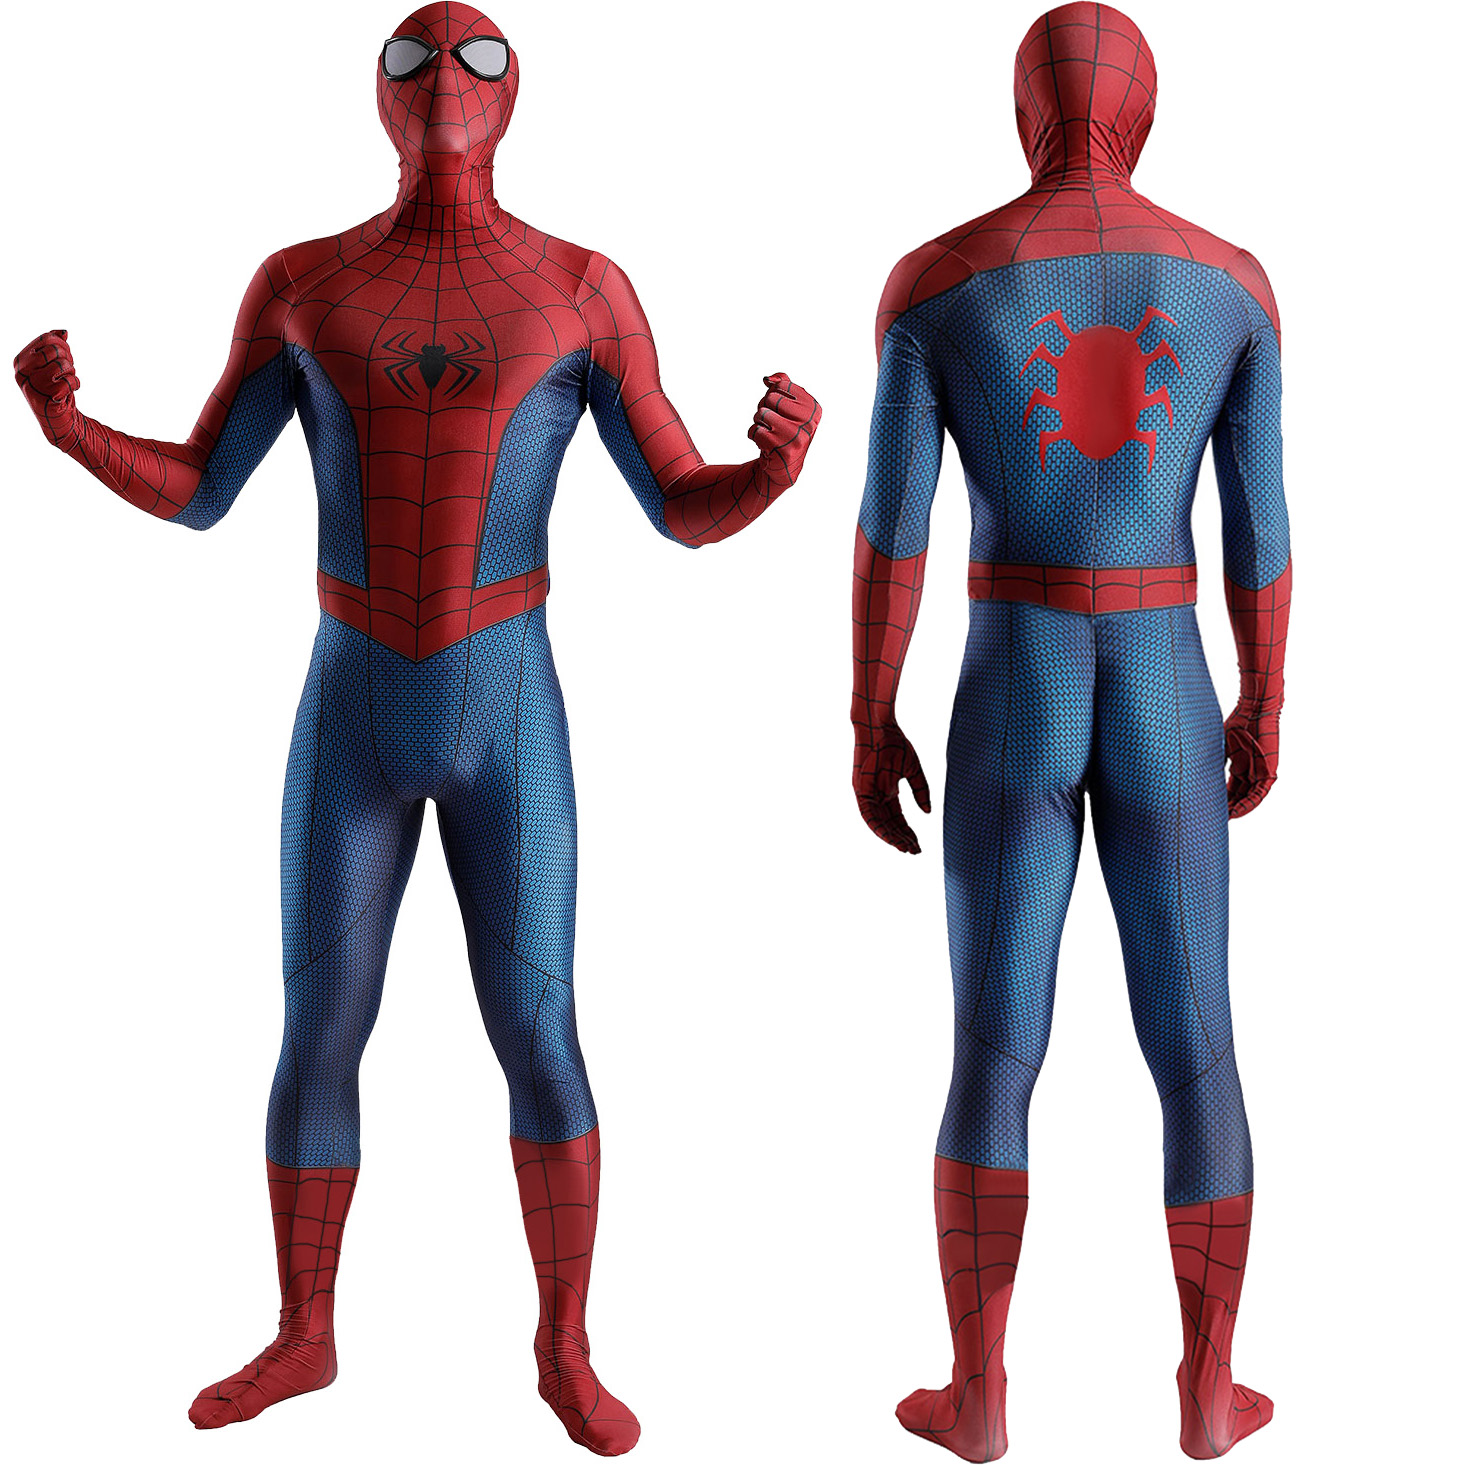 Spider-Man Battle Anzug Kinder Spider Cosplay BodySuit für Erwachsene Superhelden Kostüm Halloween tun vor, spandex Jumpsuit zu spielen